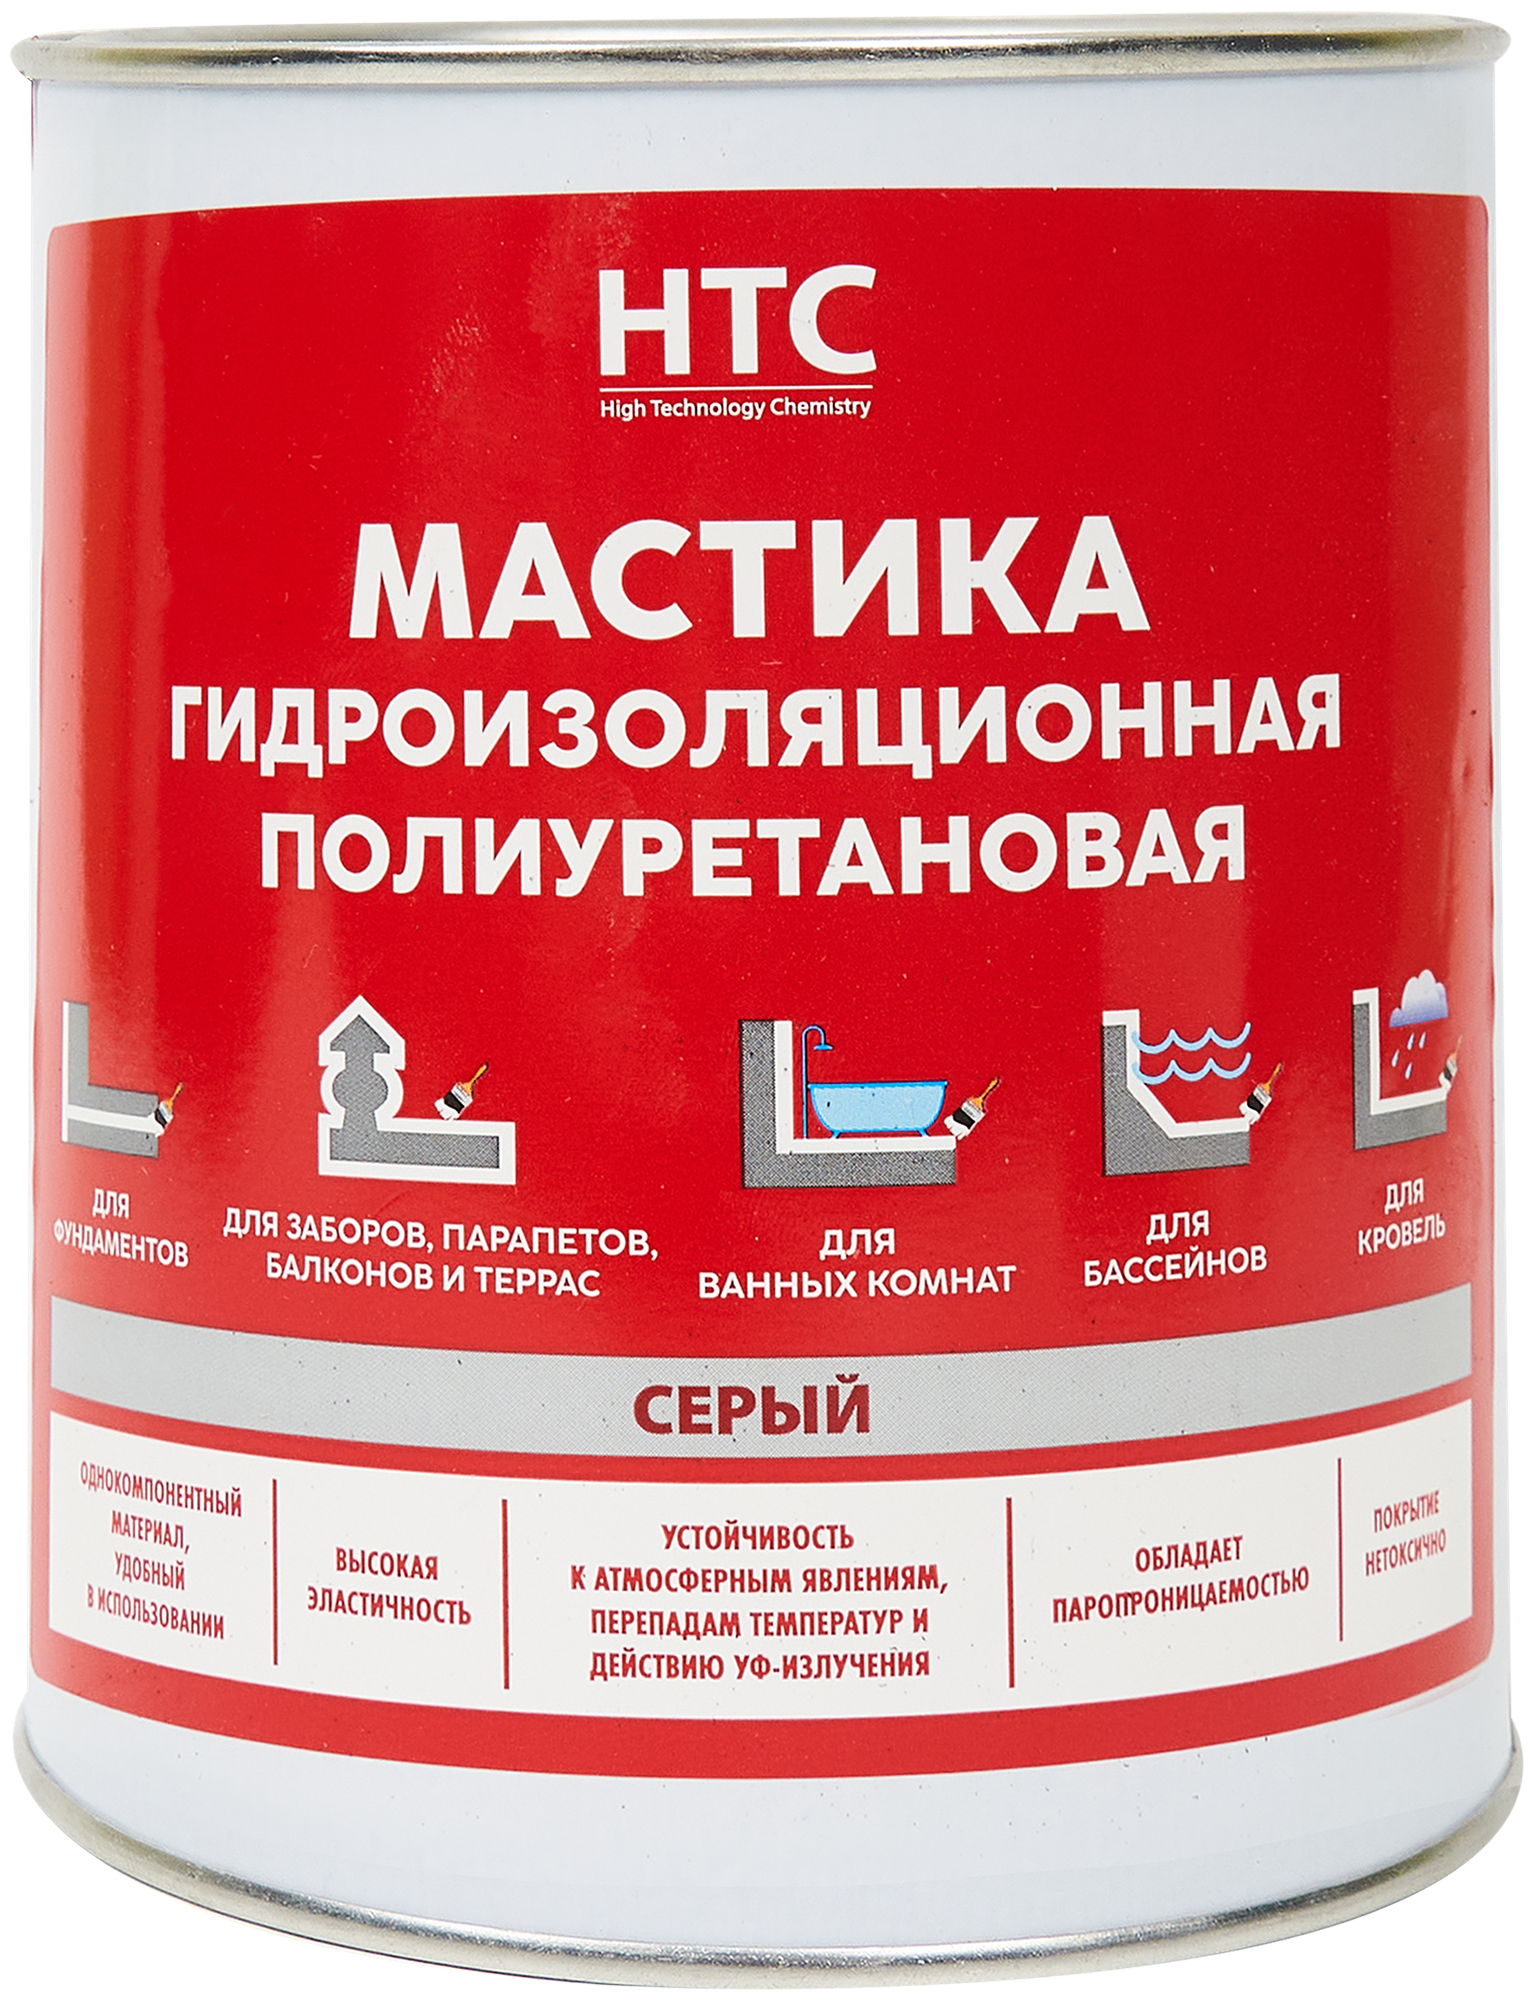 Мастика гидроизоляционная полиуретановая HTC 1 кг цвет серый